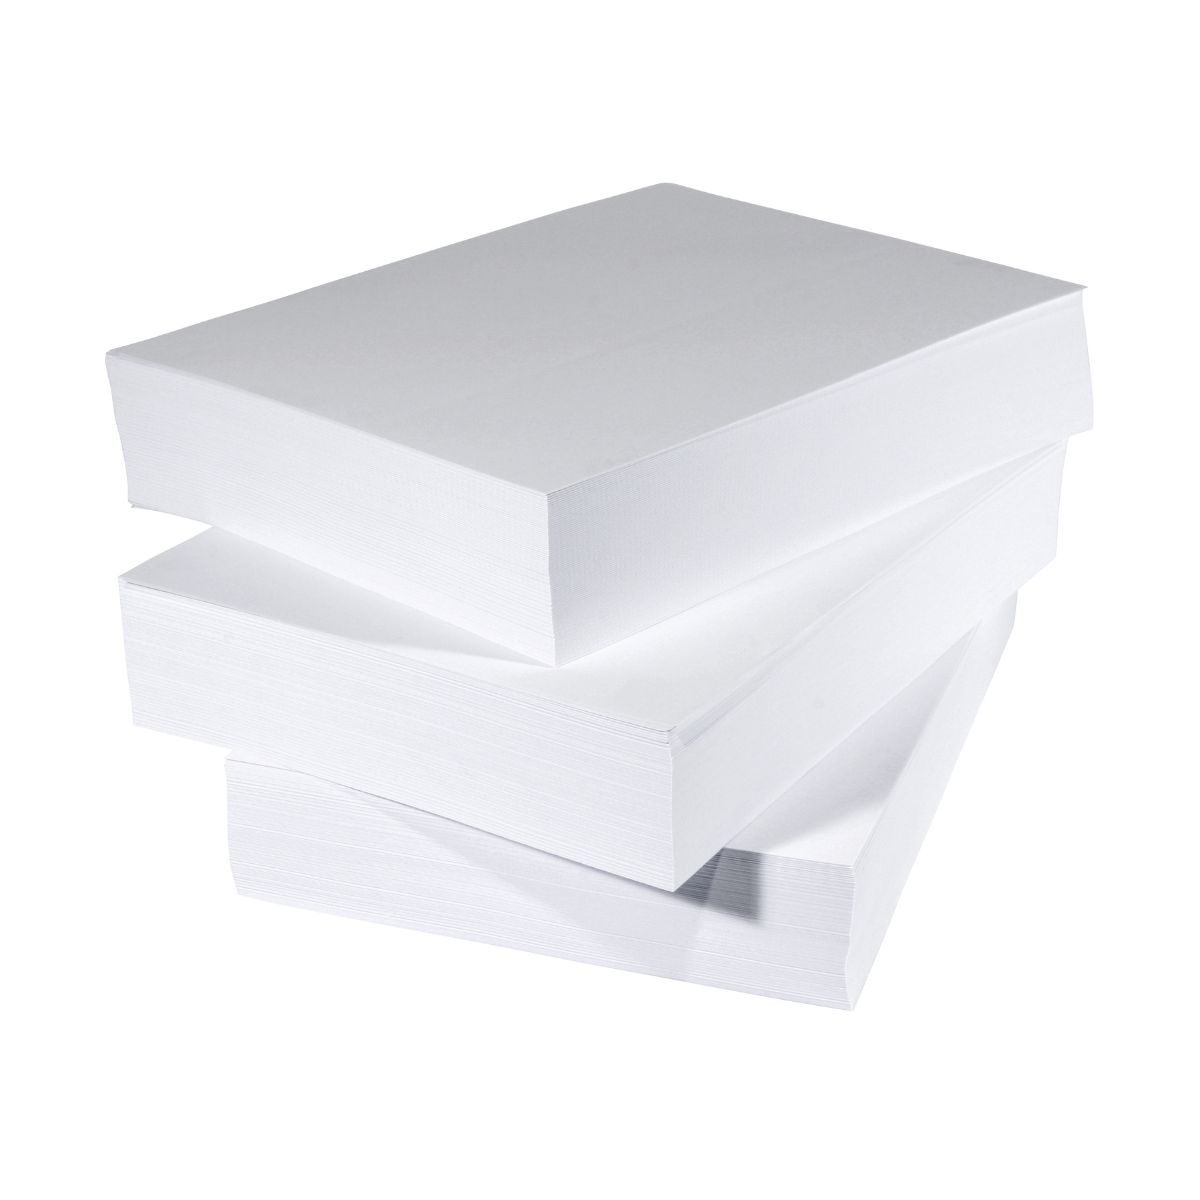 Kopierpapier A4 Weiß | 80 Gramm | Copyset 5x500 Bl